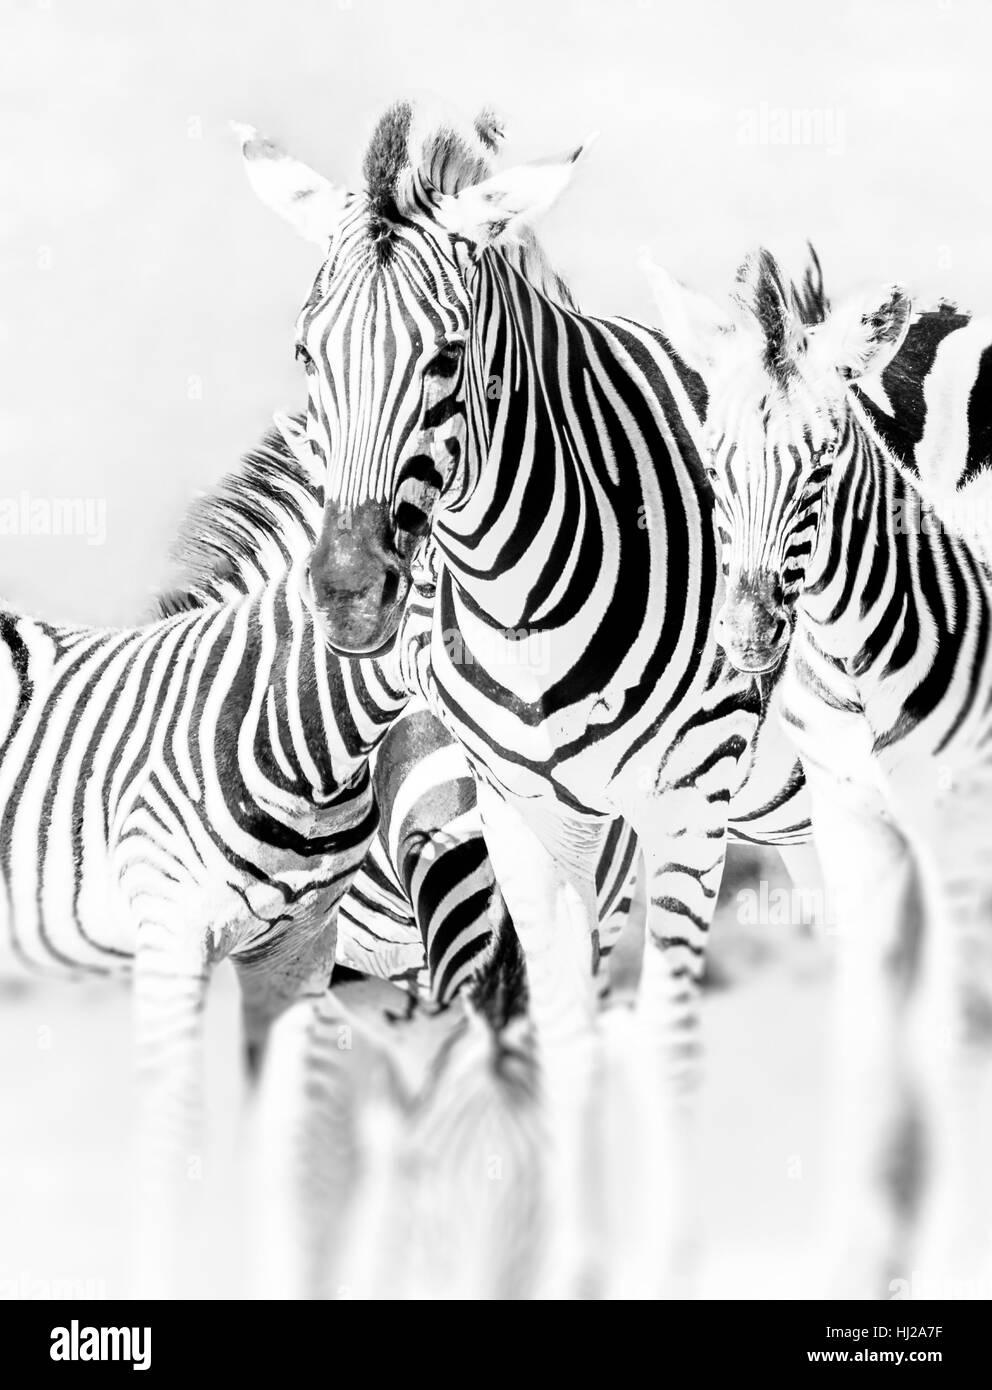 Portrait de groupe zebra monochrome,South African National Park - high key animal noir et blanc close-up avec arrière-plan flou Banque D'Images